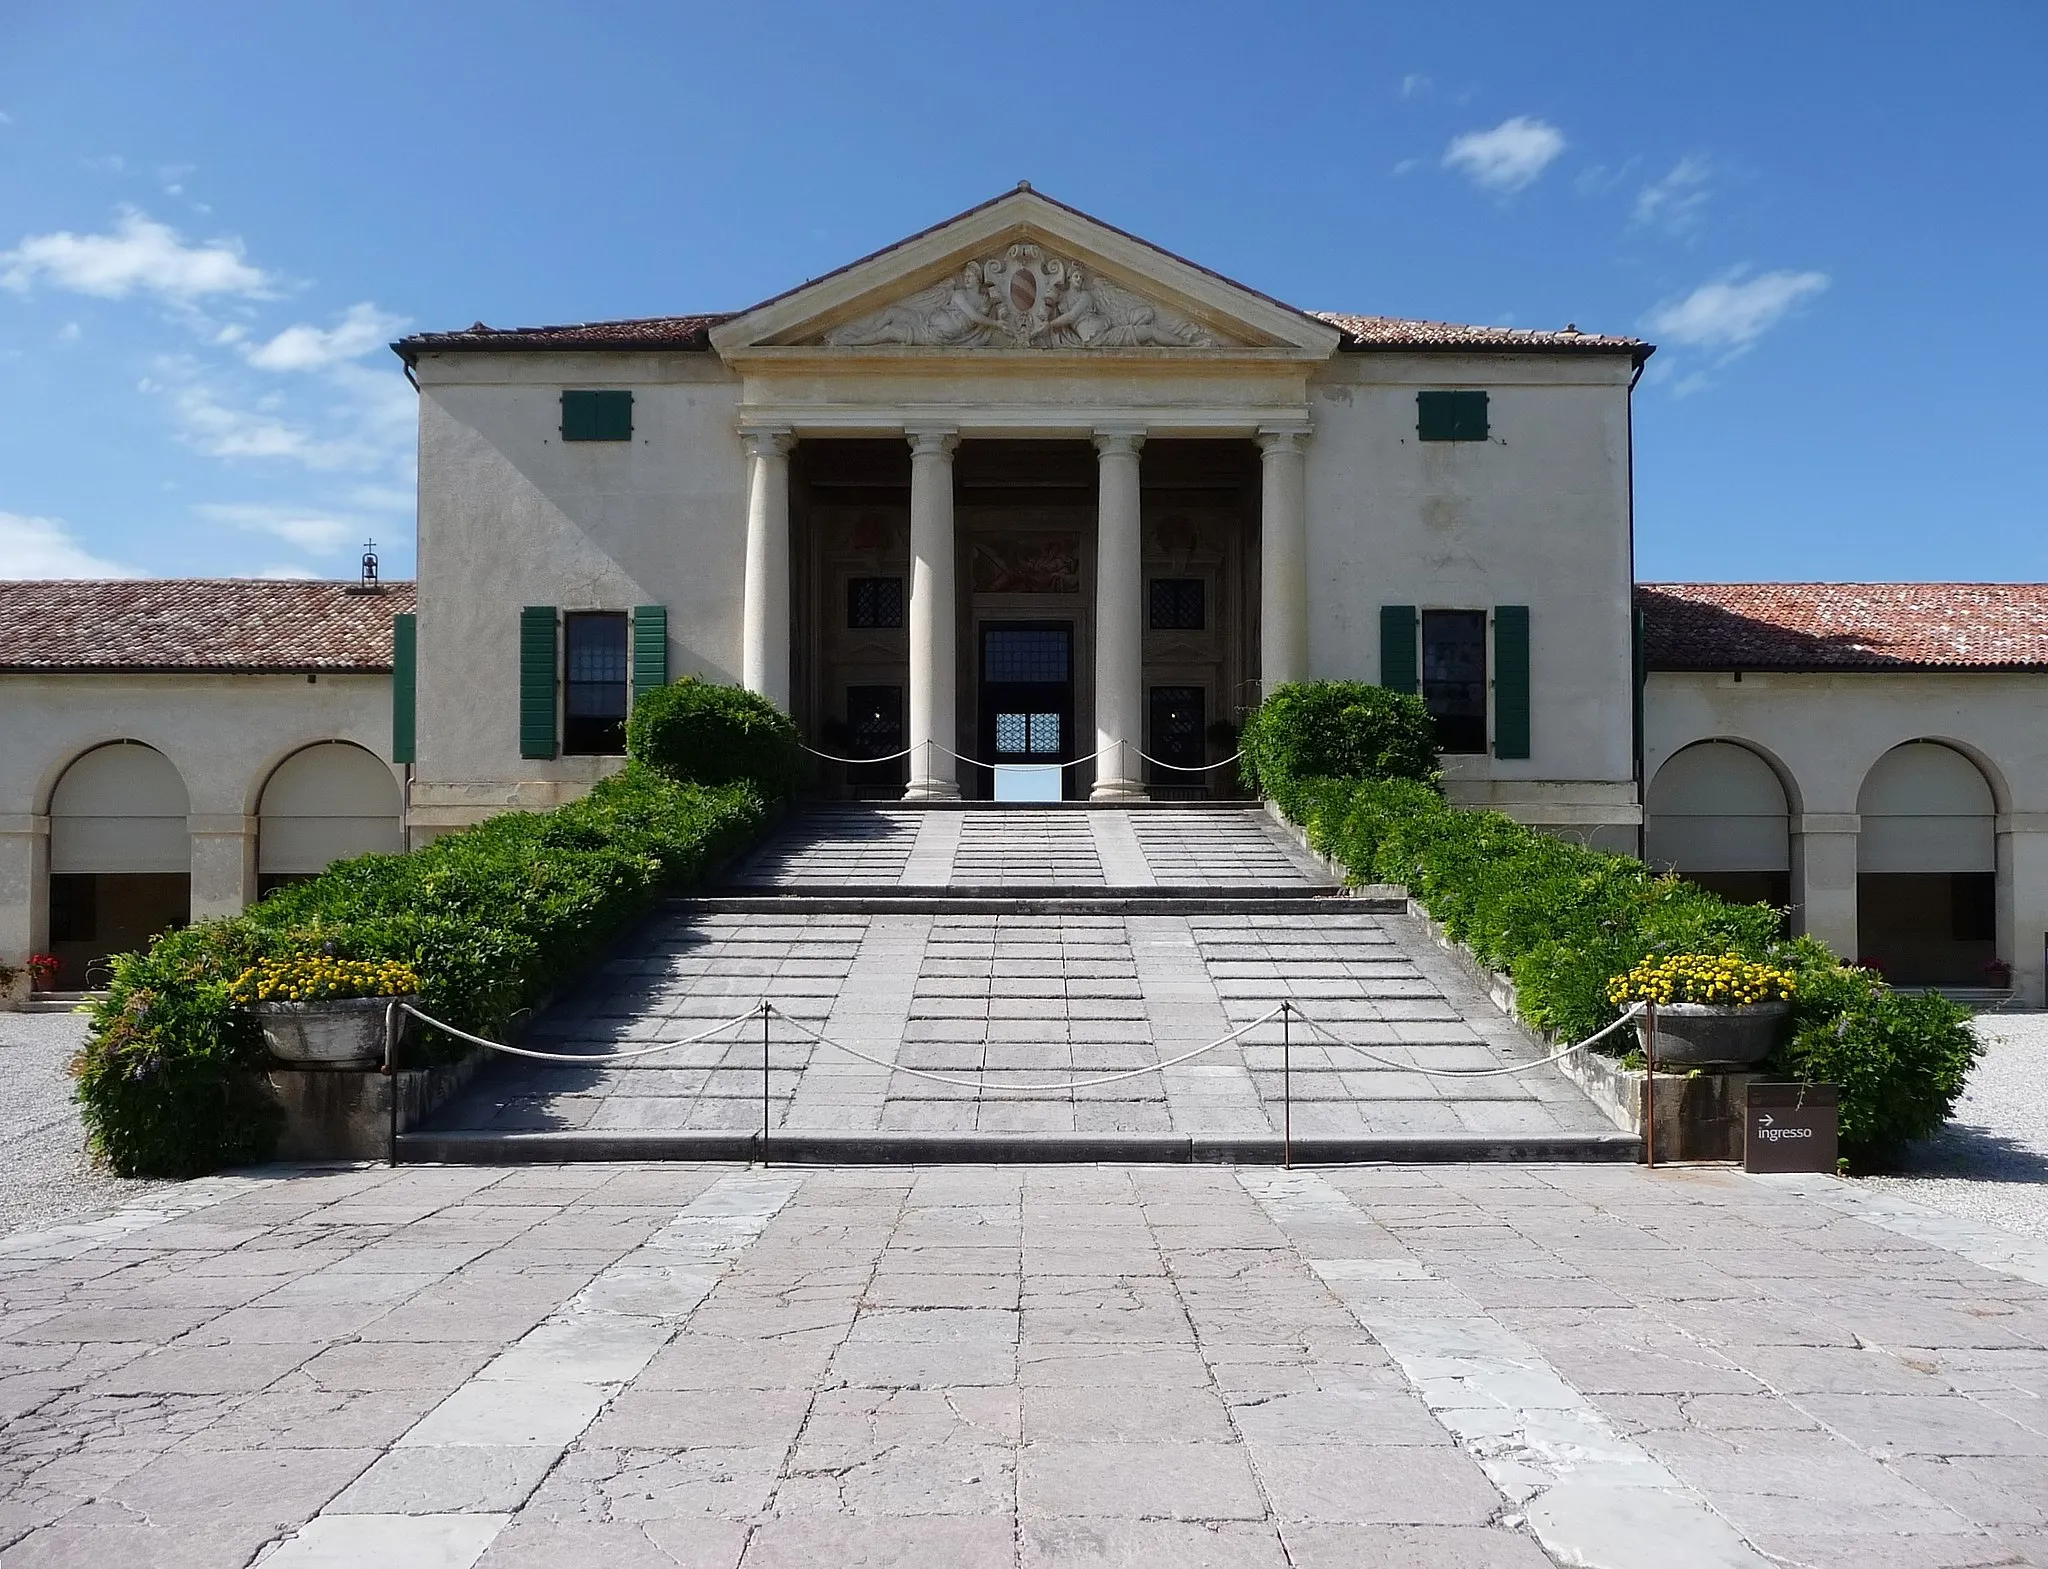 Photo showing: Villa Emo in Fanzolo di Vedelago, province of Treviso, Italy, designed by Andrea Palladio about 1558.